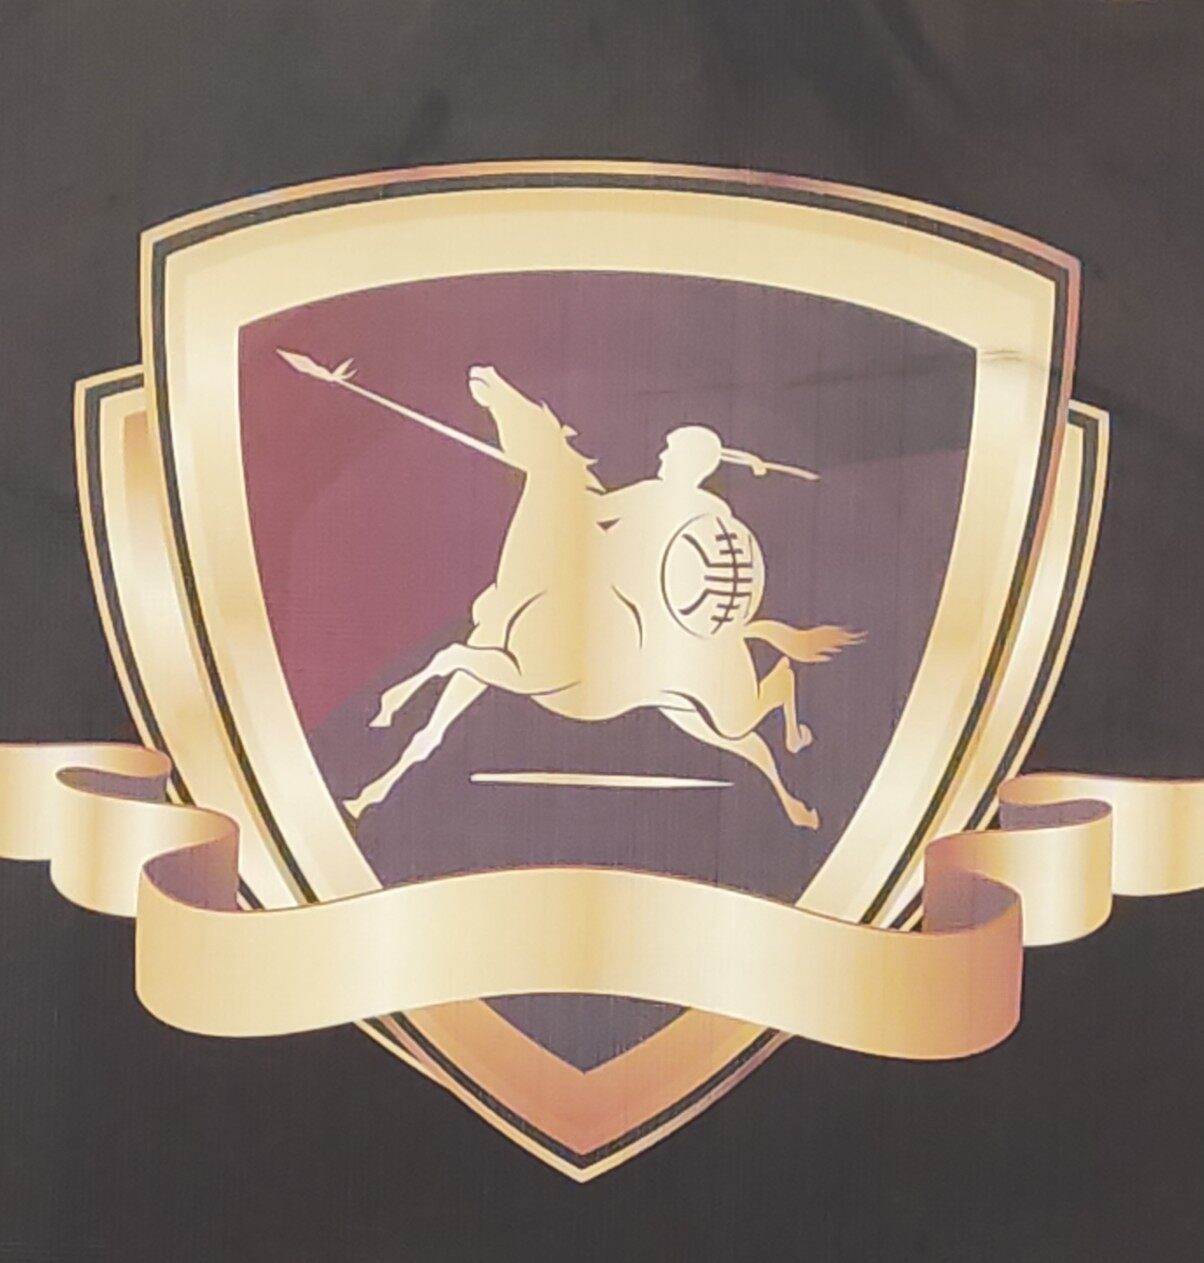 惠州市石氏金牌驾驶员培训有限公司logo